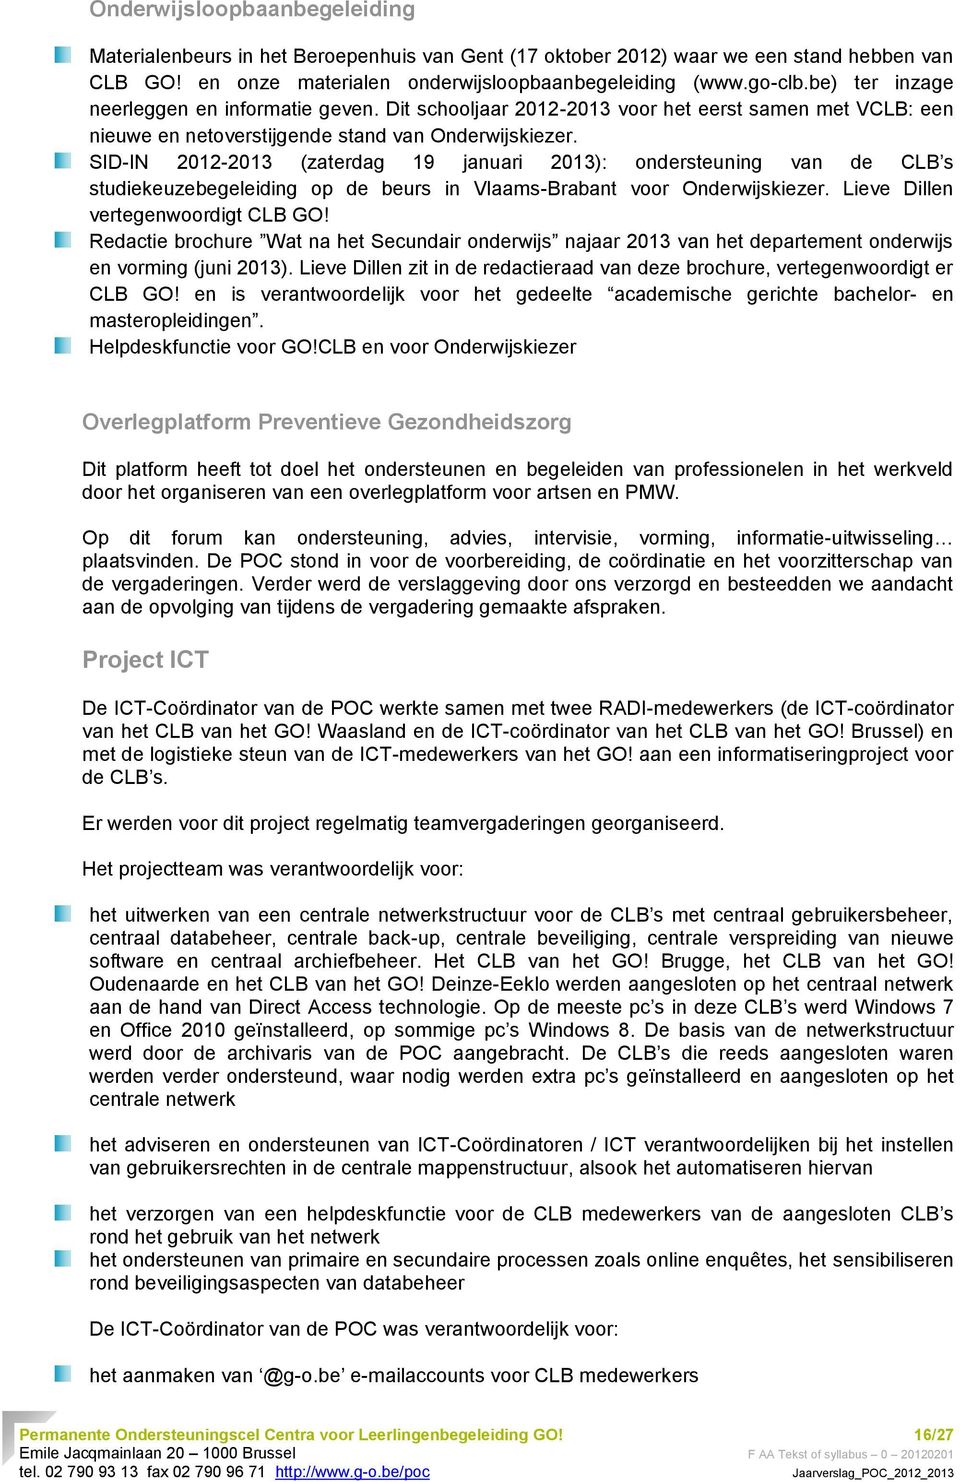 SID-IN 2012-2013 (zaterdag 19 januari 2013): ondersteuning van de CLB s studiekeuzebegeleiding op de beurs in Vlaams-Brabant voor Onderwijskiezer. Lieve Dillen vertegenwoordigt CLB GO!